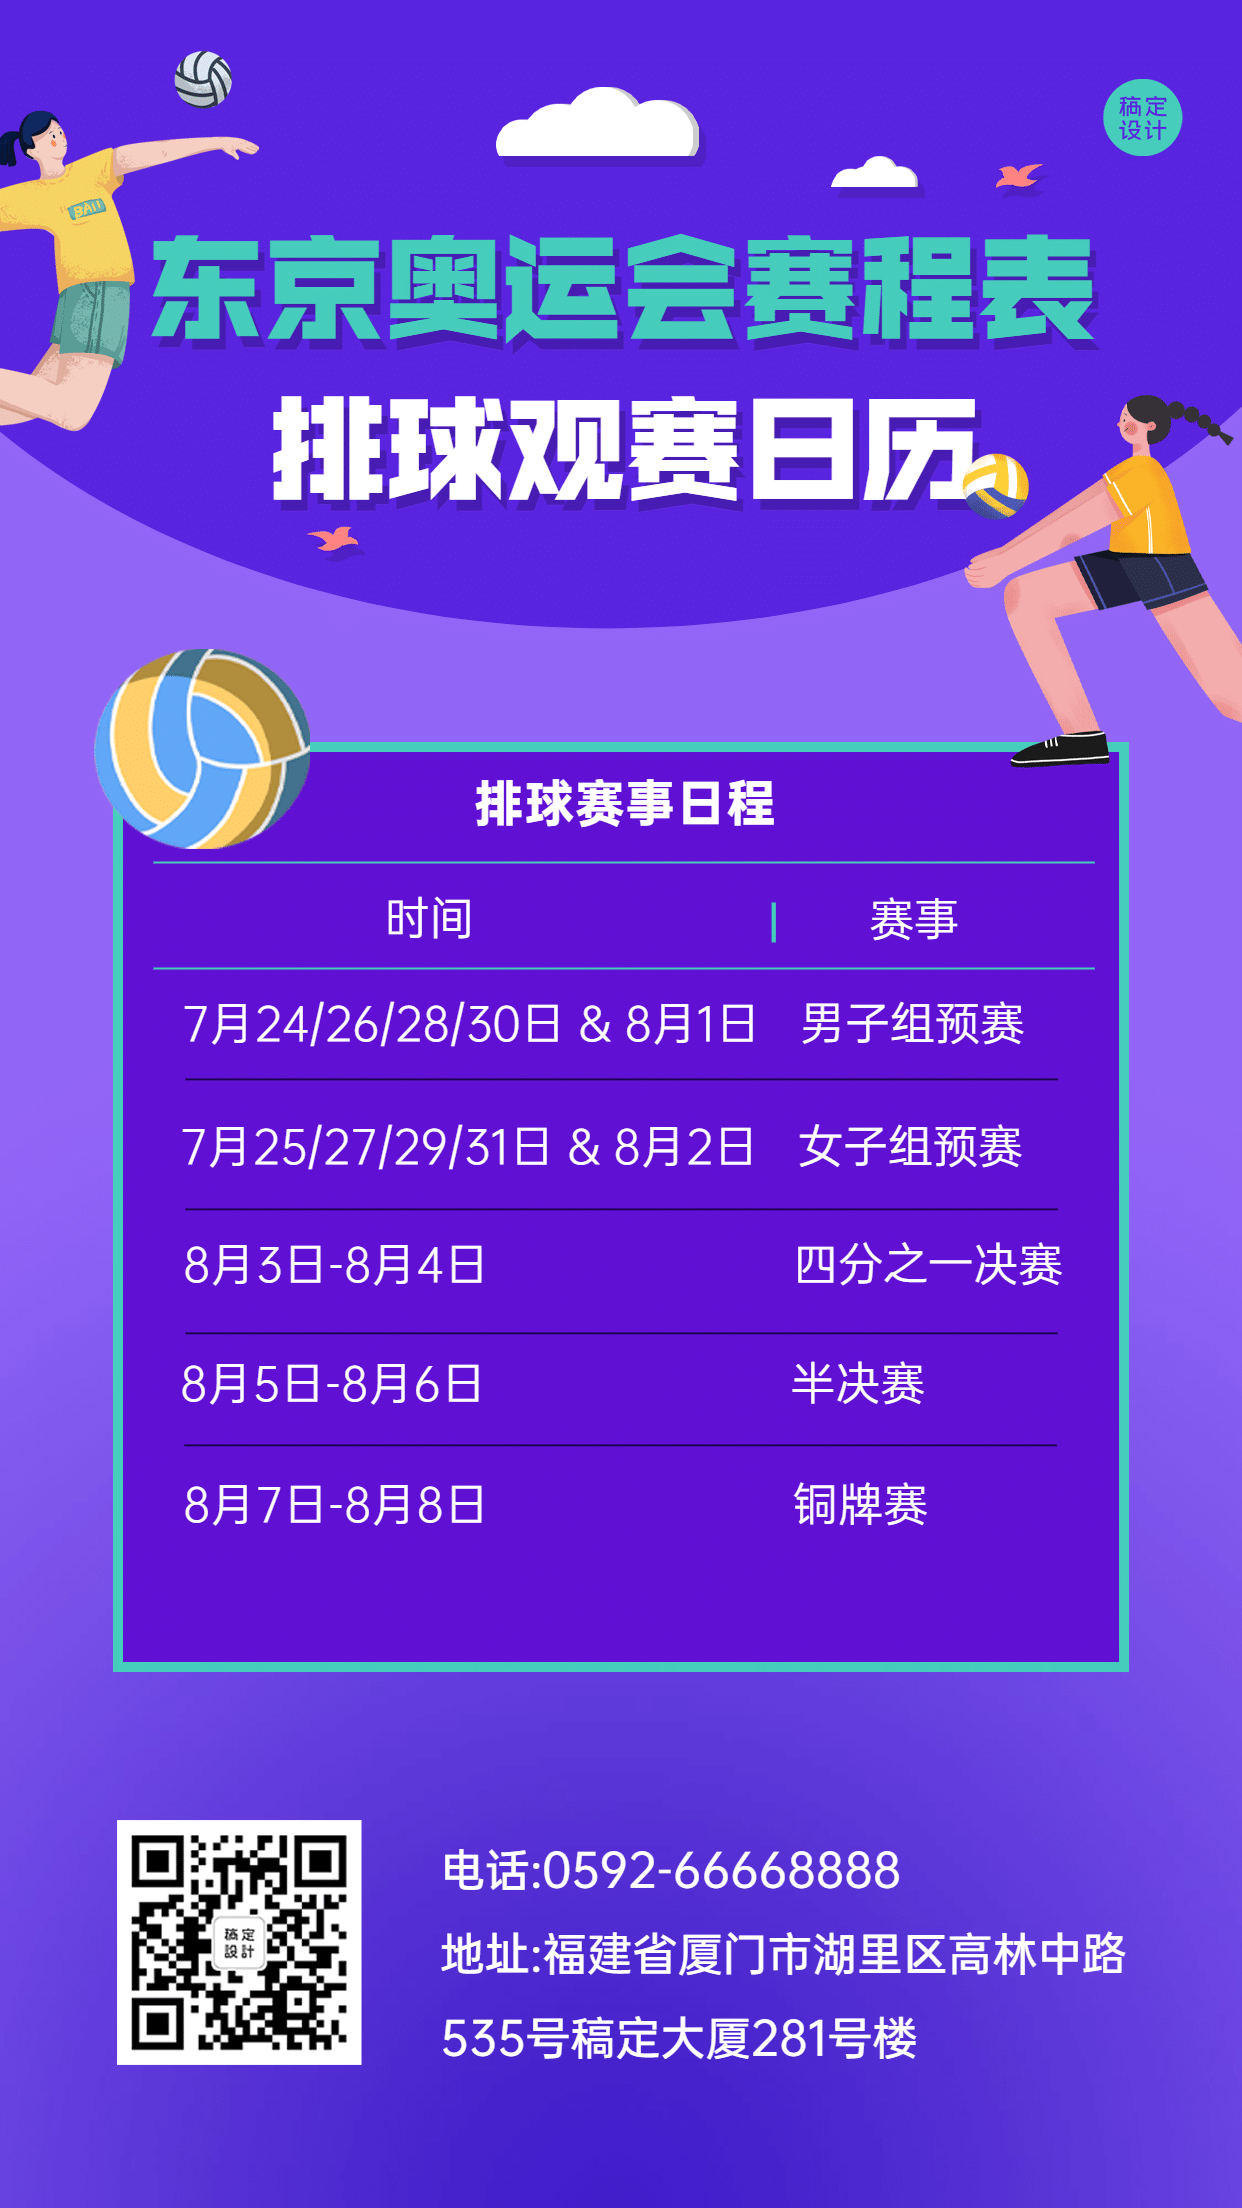 东京奥运会排球赛事日历手机海报预览效果